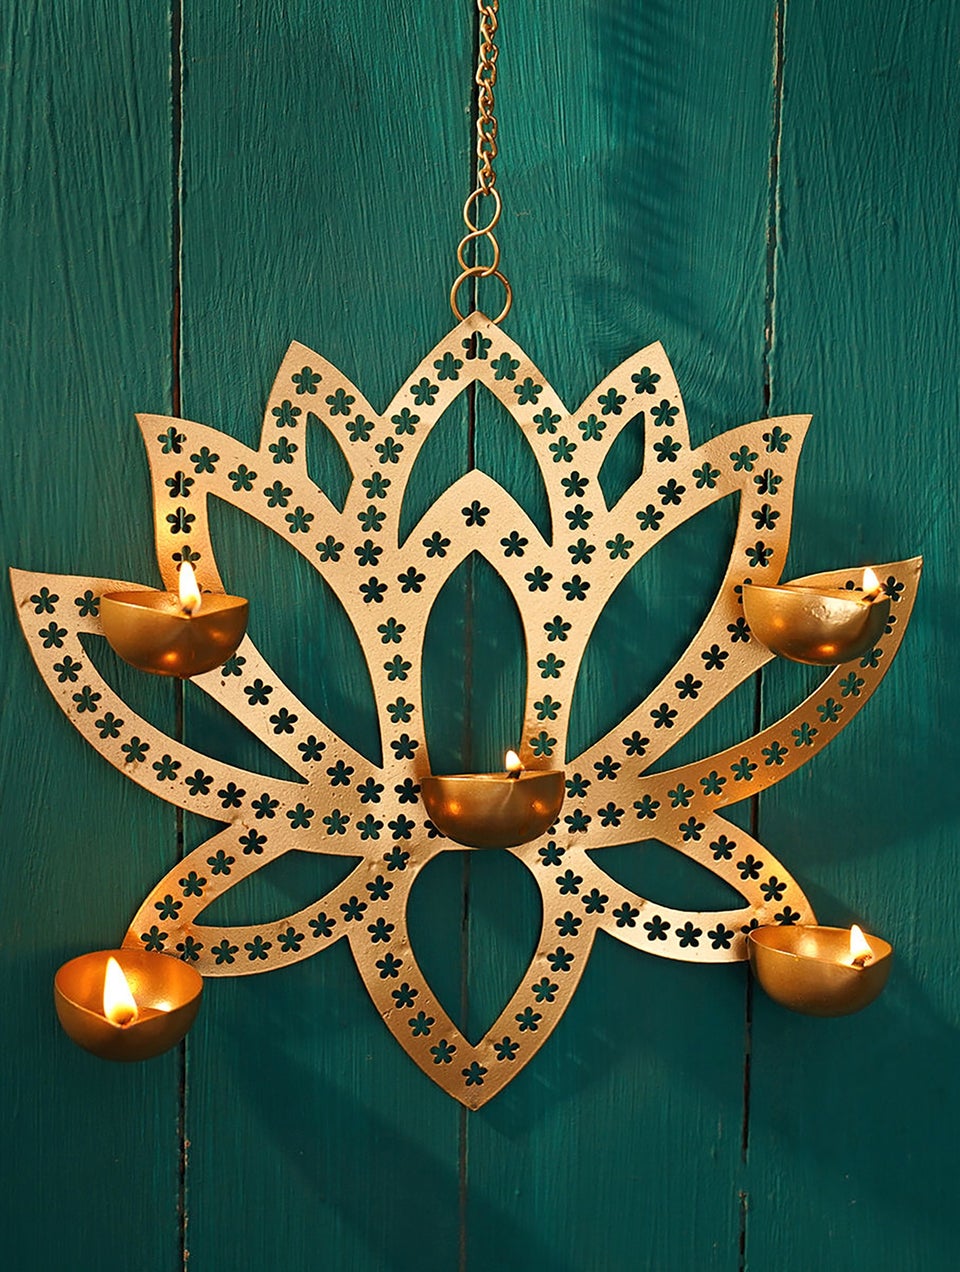 Golden Lotus Metal Hanging Lamp